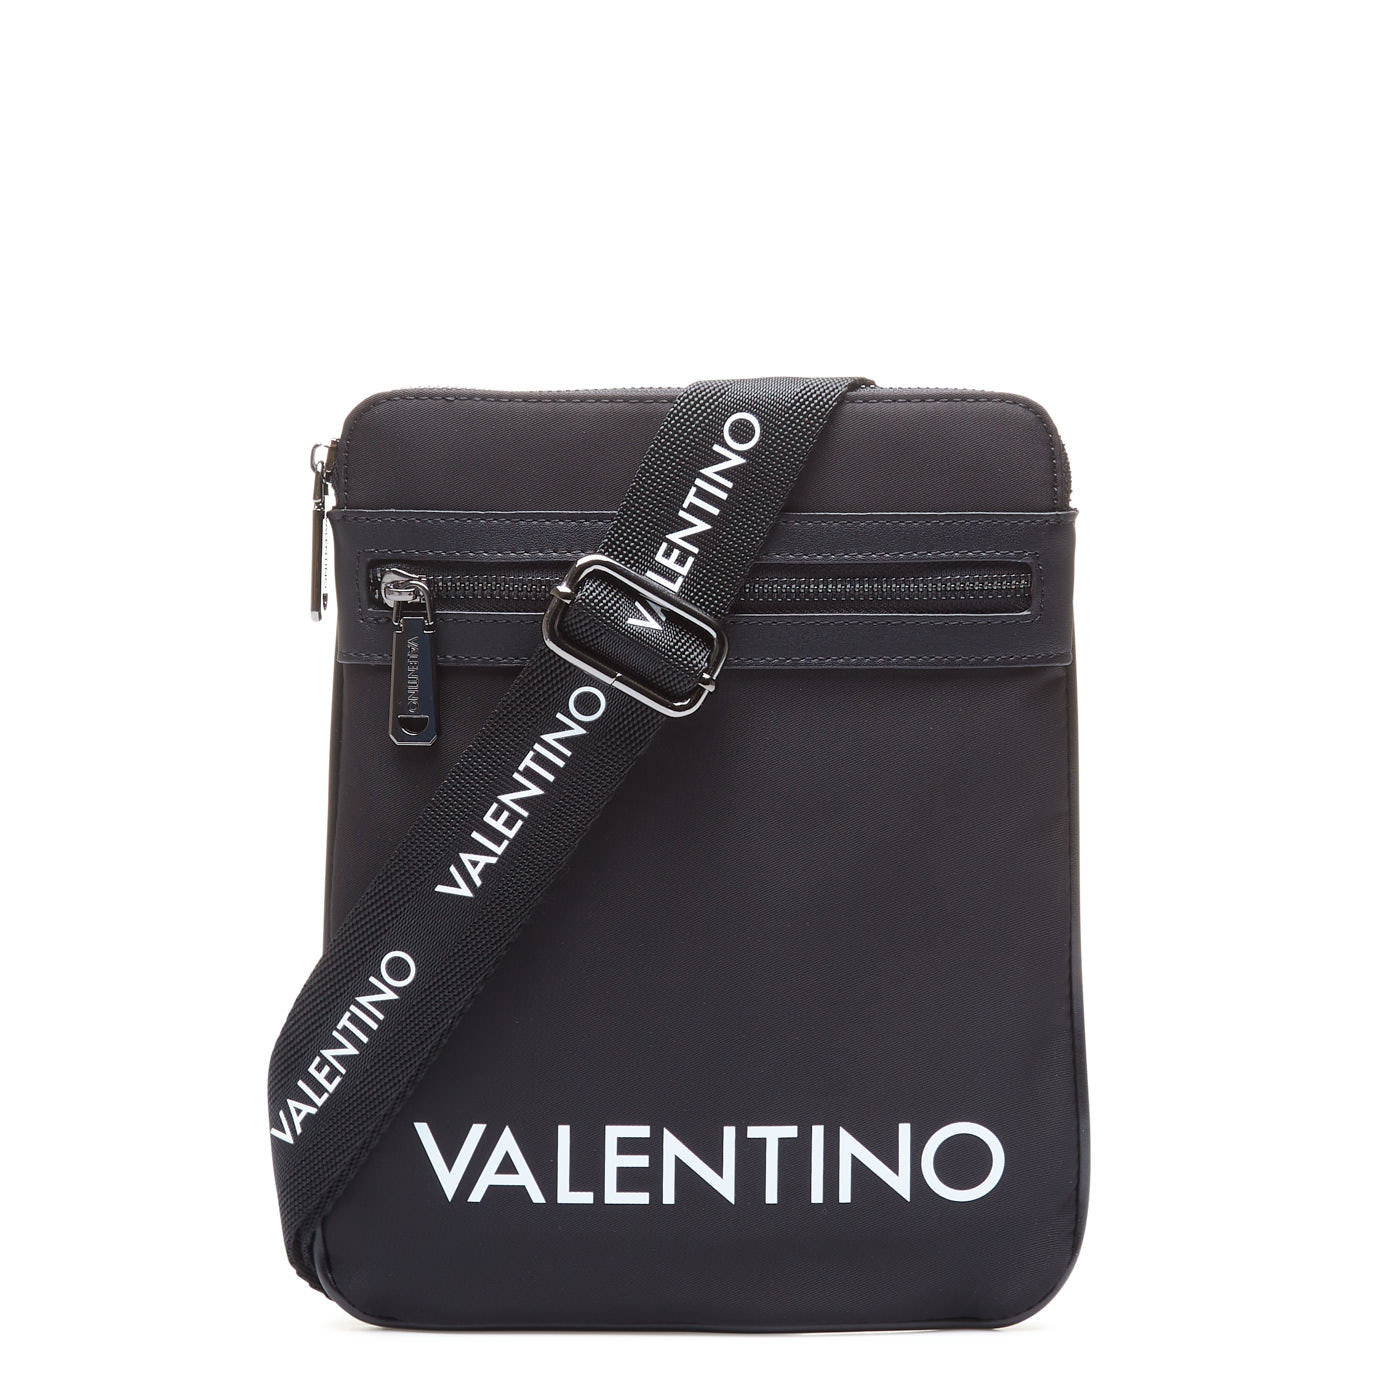 valentino messenger bag mens